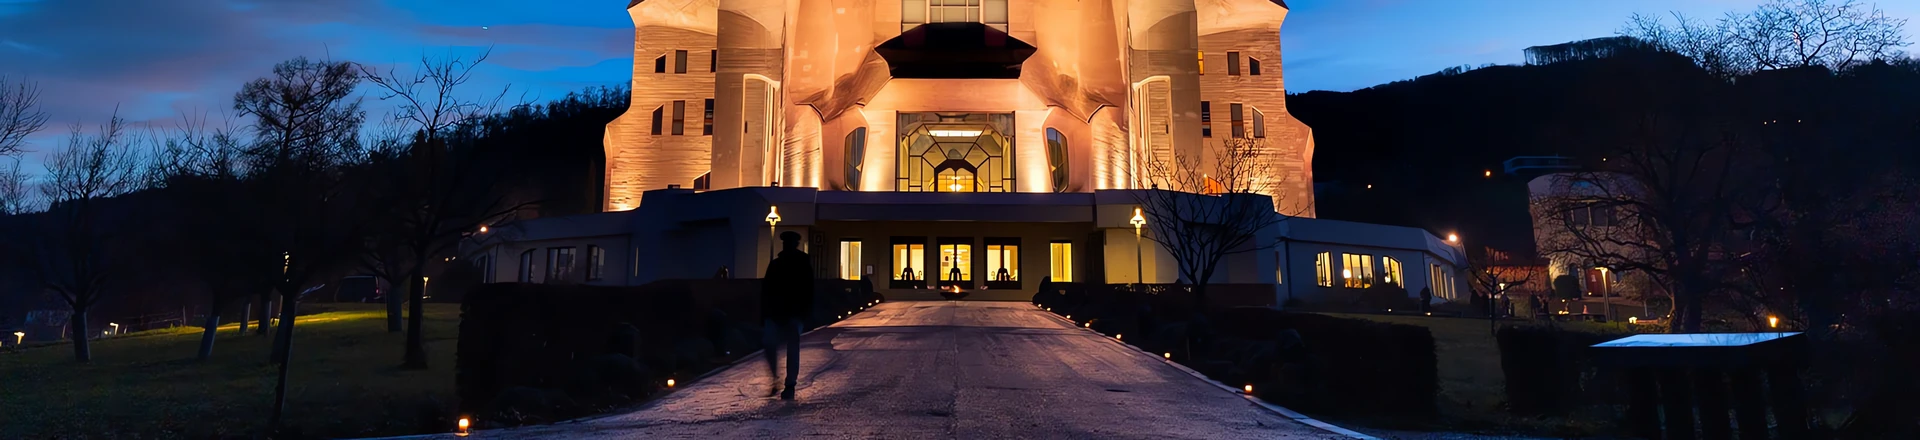 Cameo czuwa - Oprawy ZENIT W300s oświetliły Goetheanum